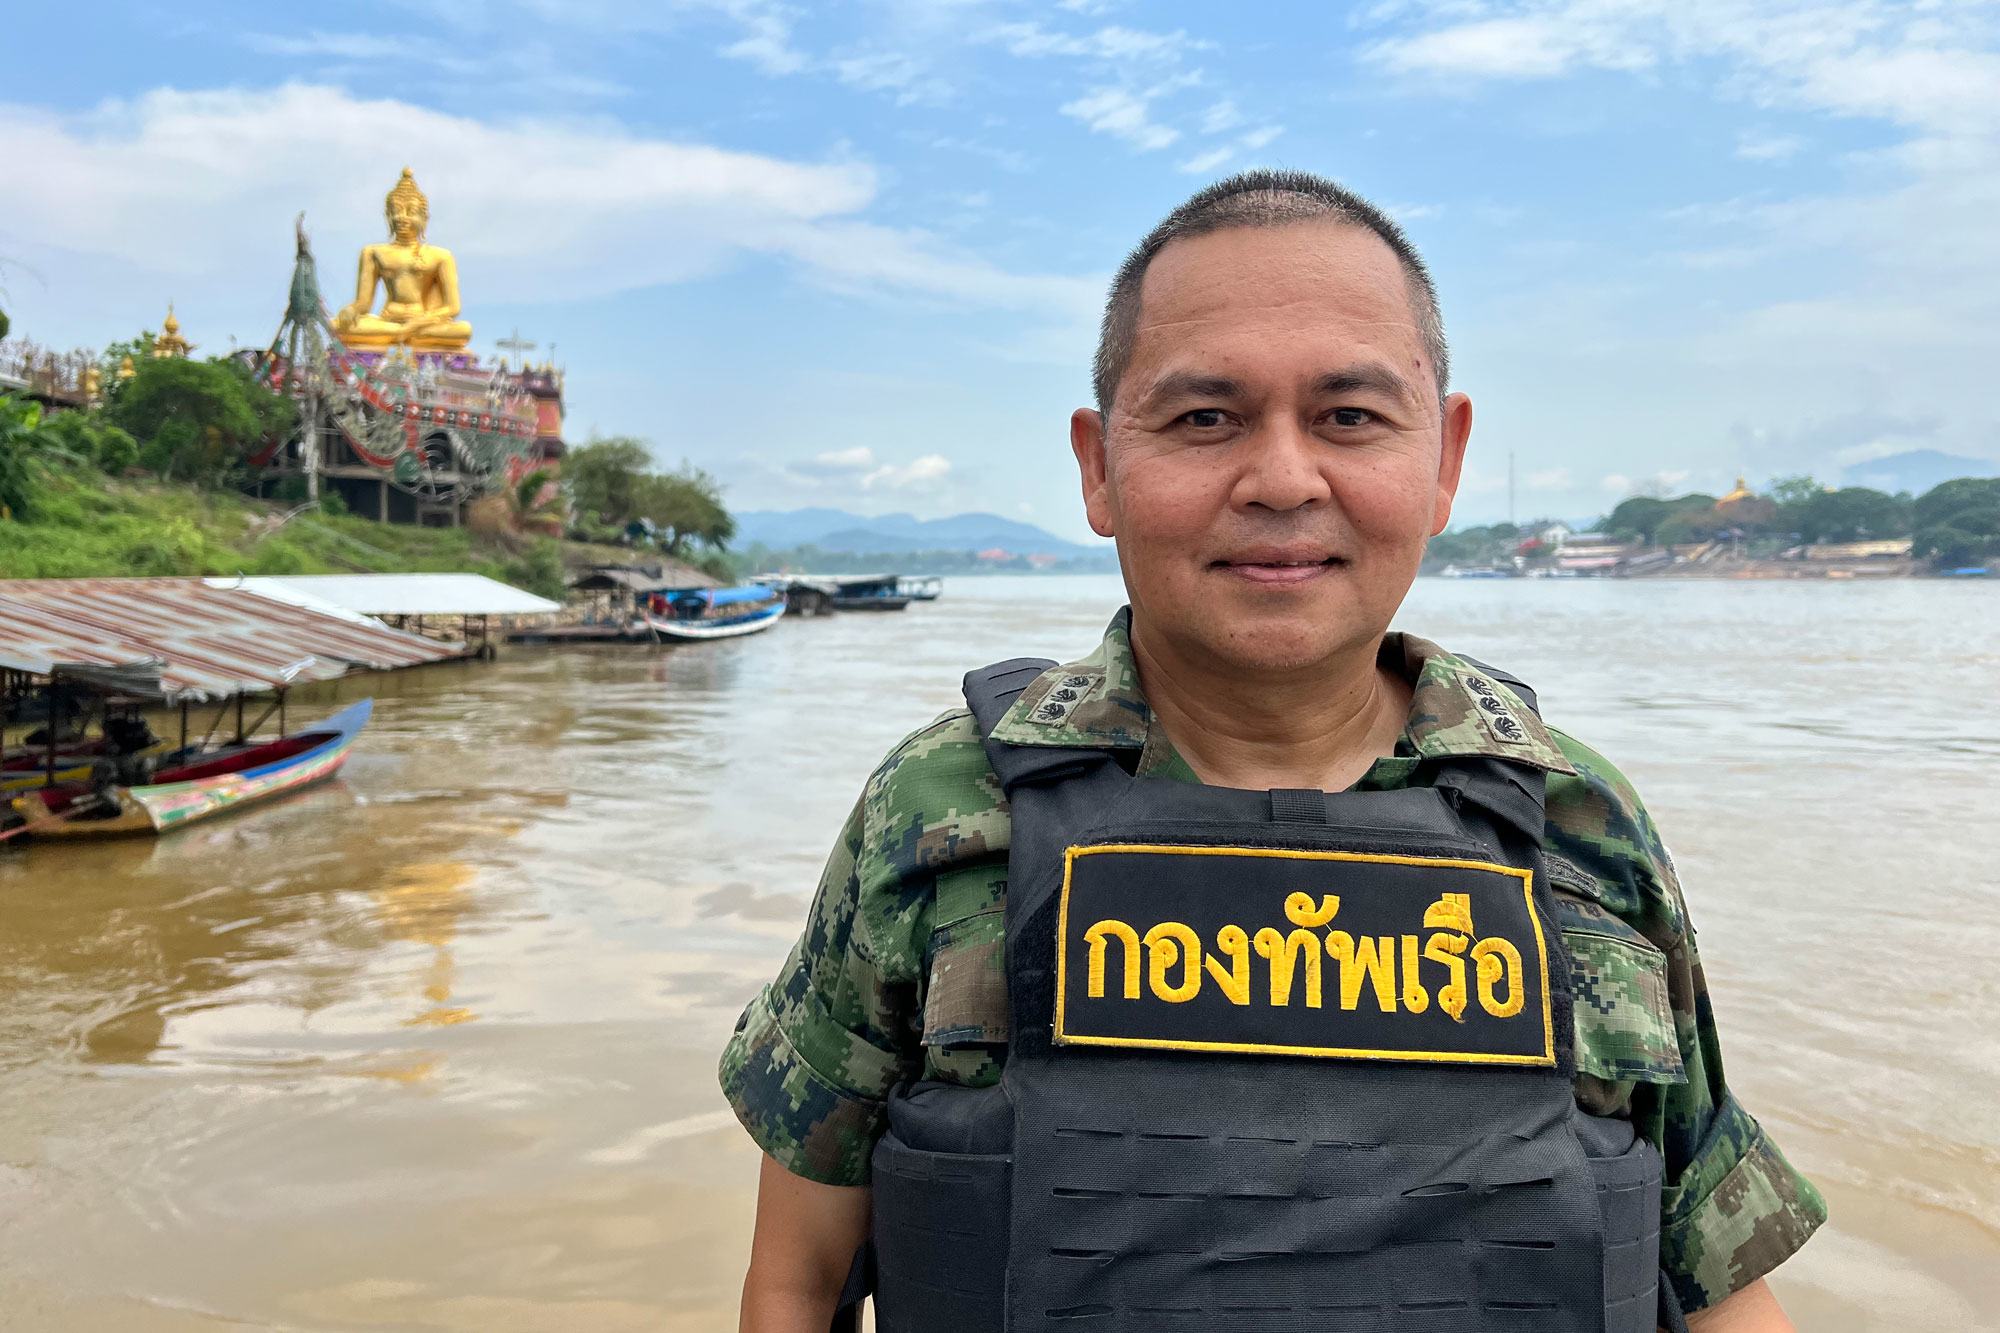 تم تعيين الكابتن فاكورن مانيام في وحدة نهر ميكونغ النهرية التابعة للبحرية التايلاندية